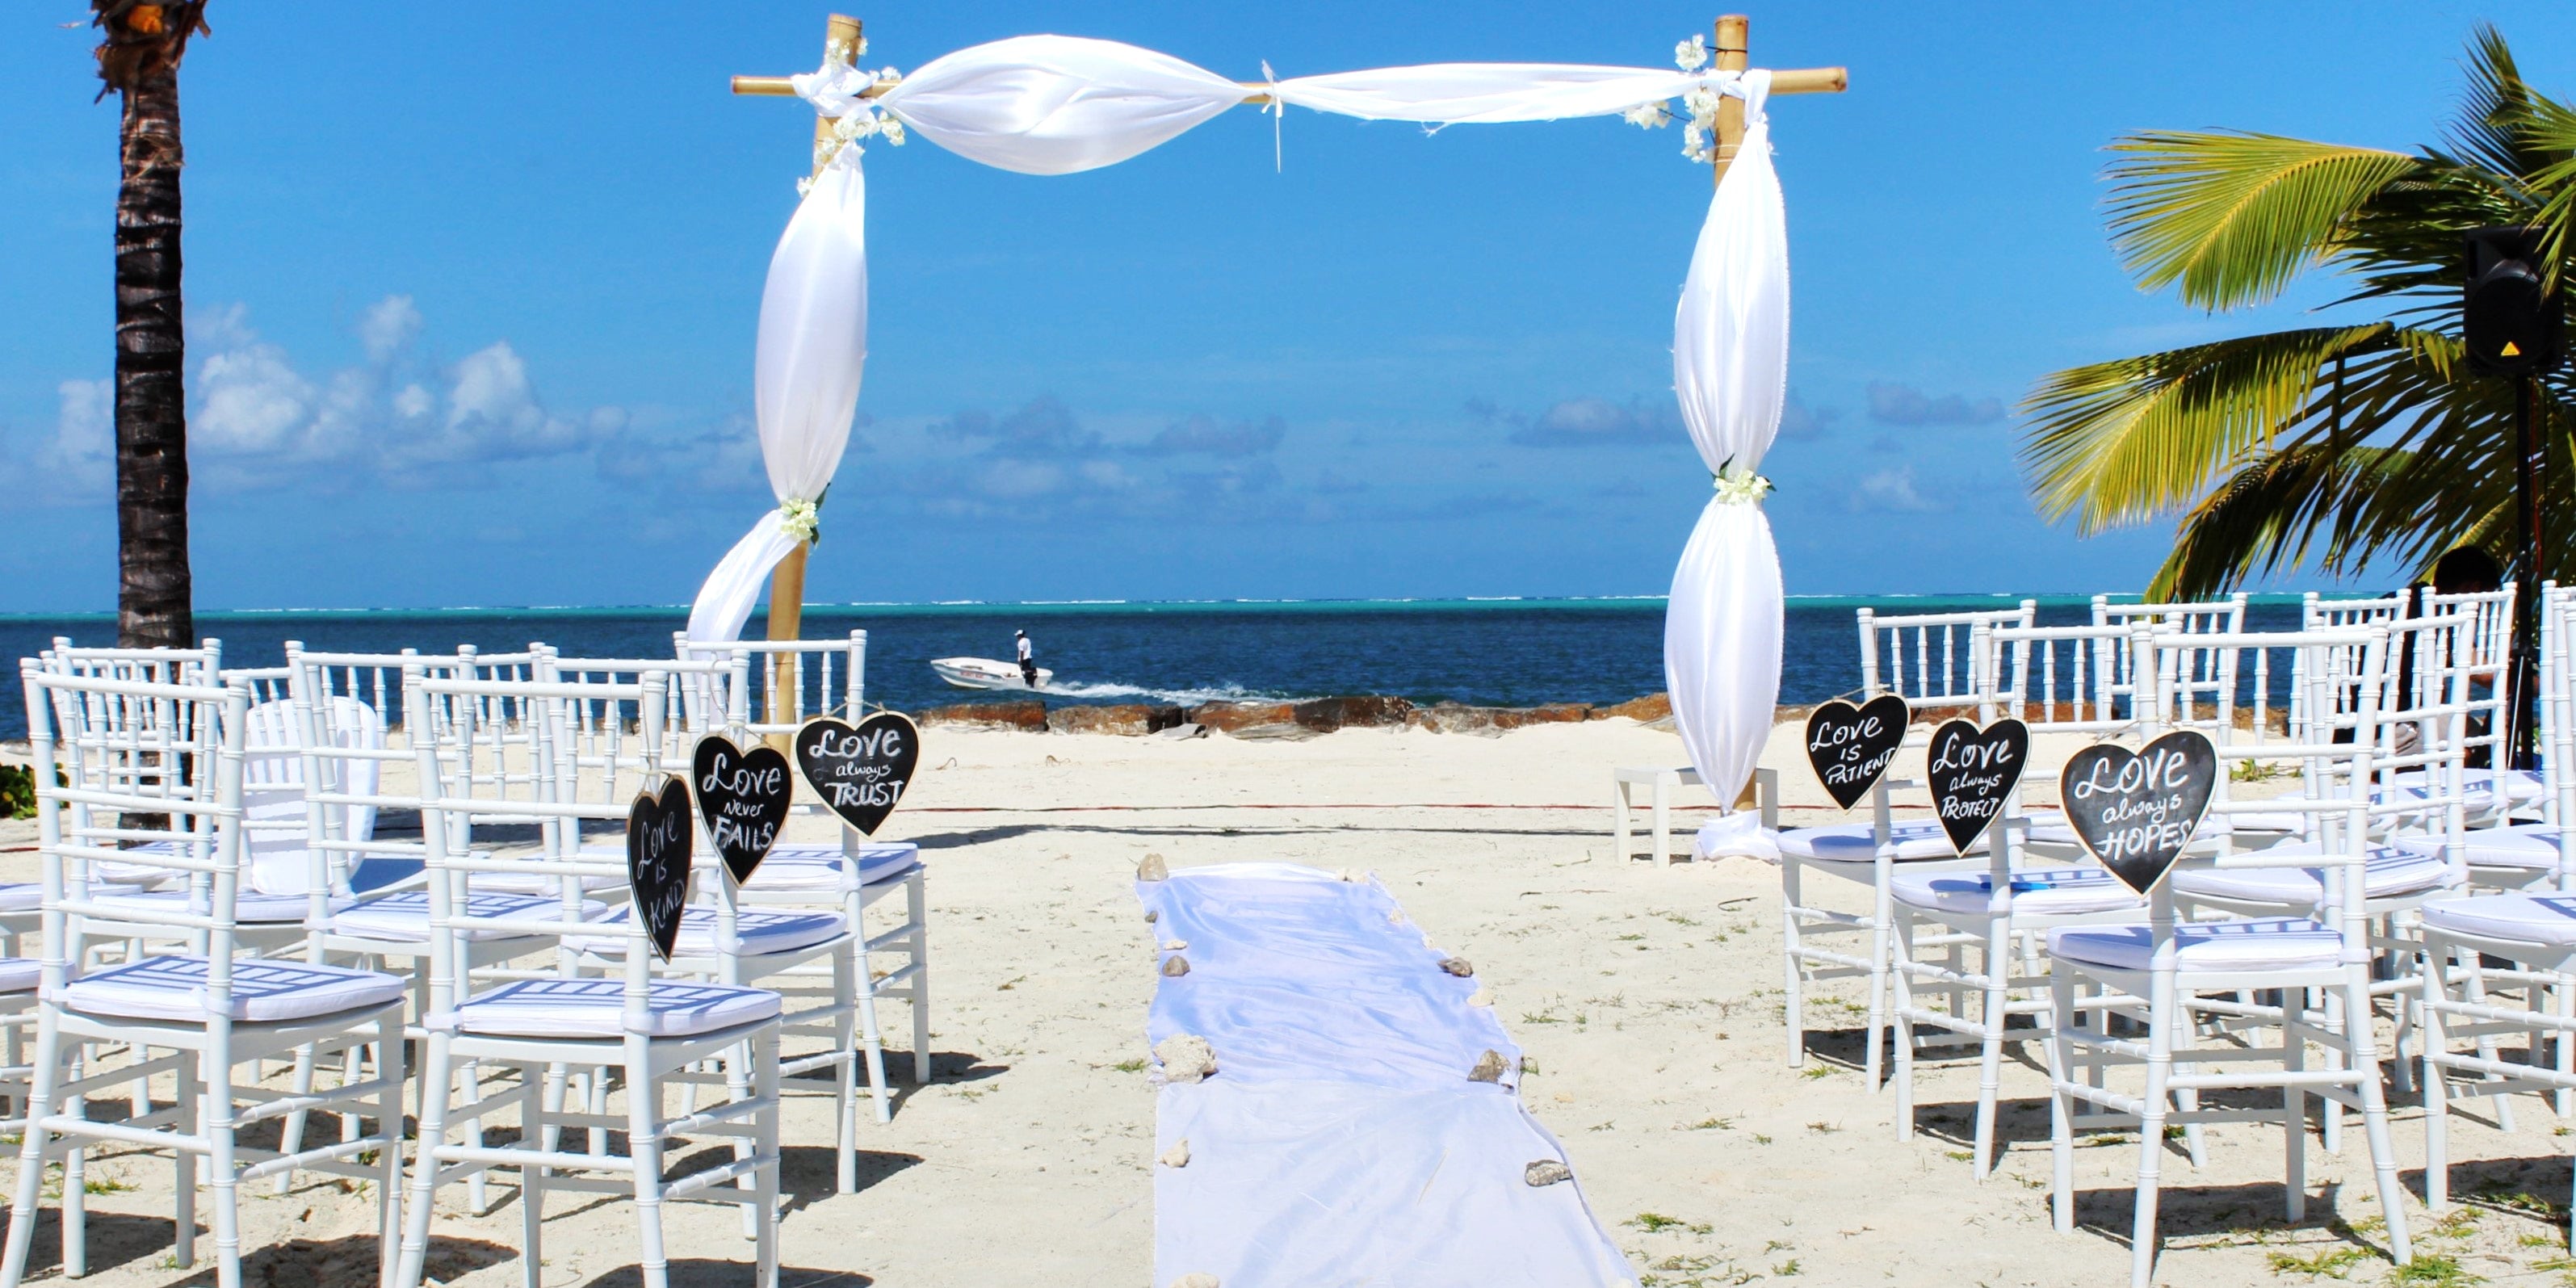 De geschikte etiquette voor een strand bruiloft